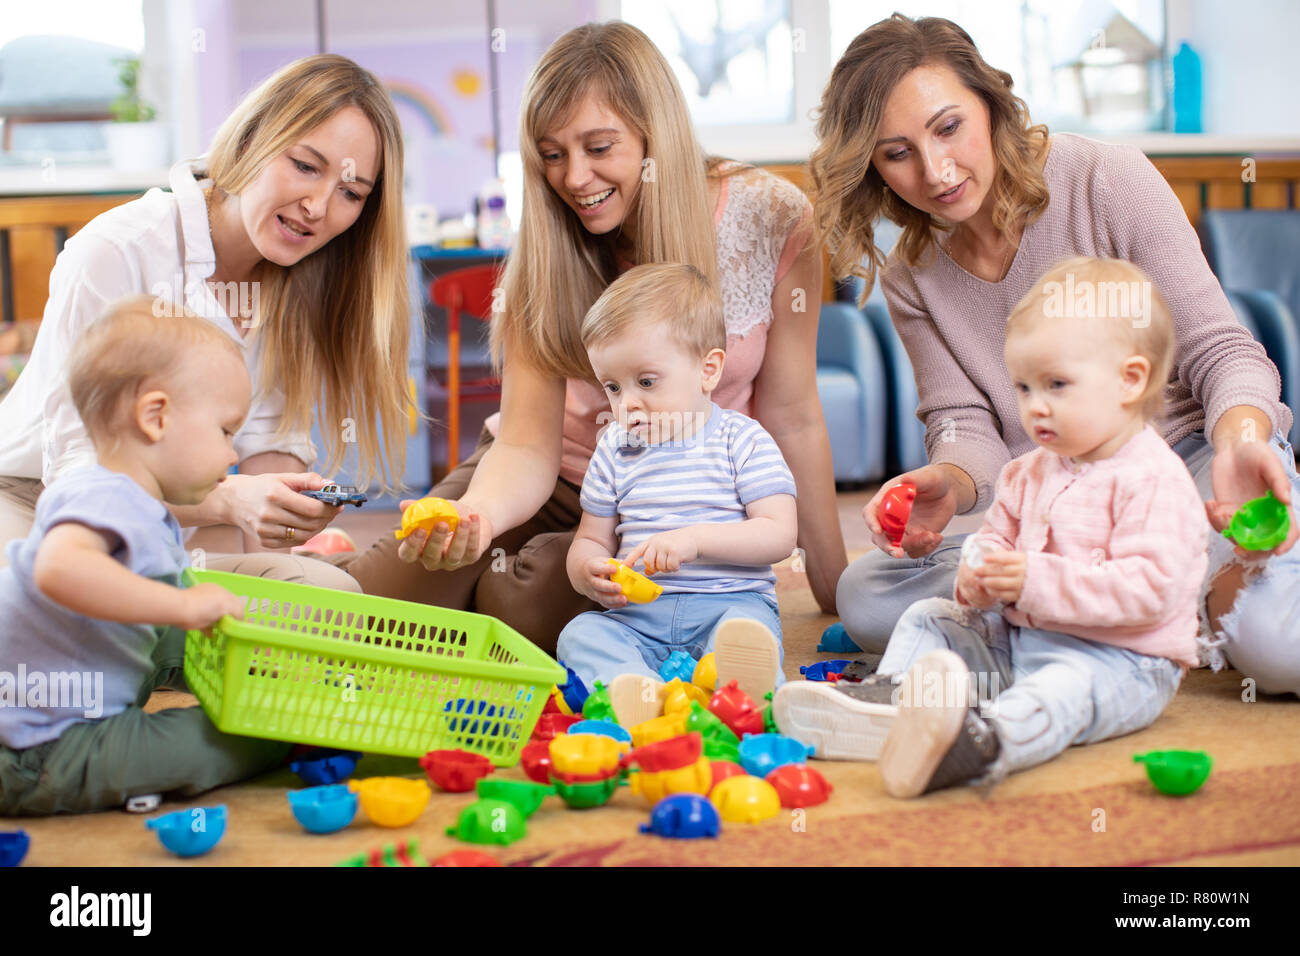 Gruppe von Kindern 1-2 Jahre alt, spielen im Kindergarten oder in der Kindertagesstätte unter der Aufsicht von Mammen Stockfoto